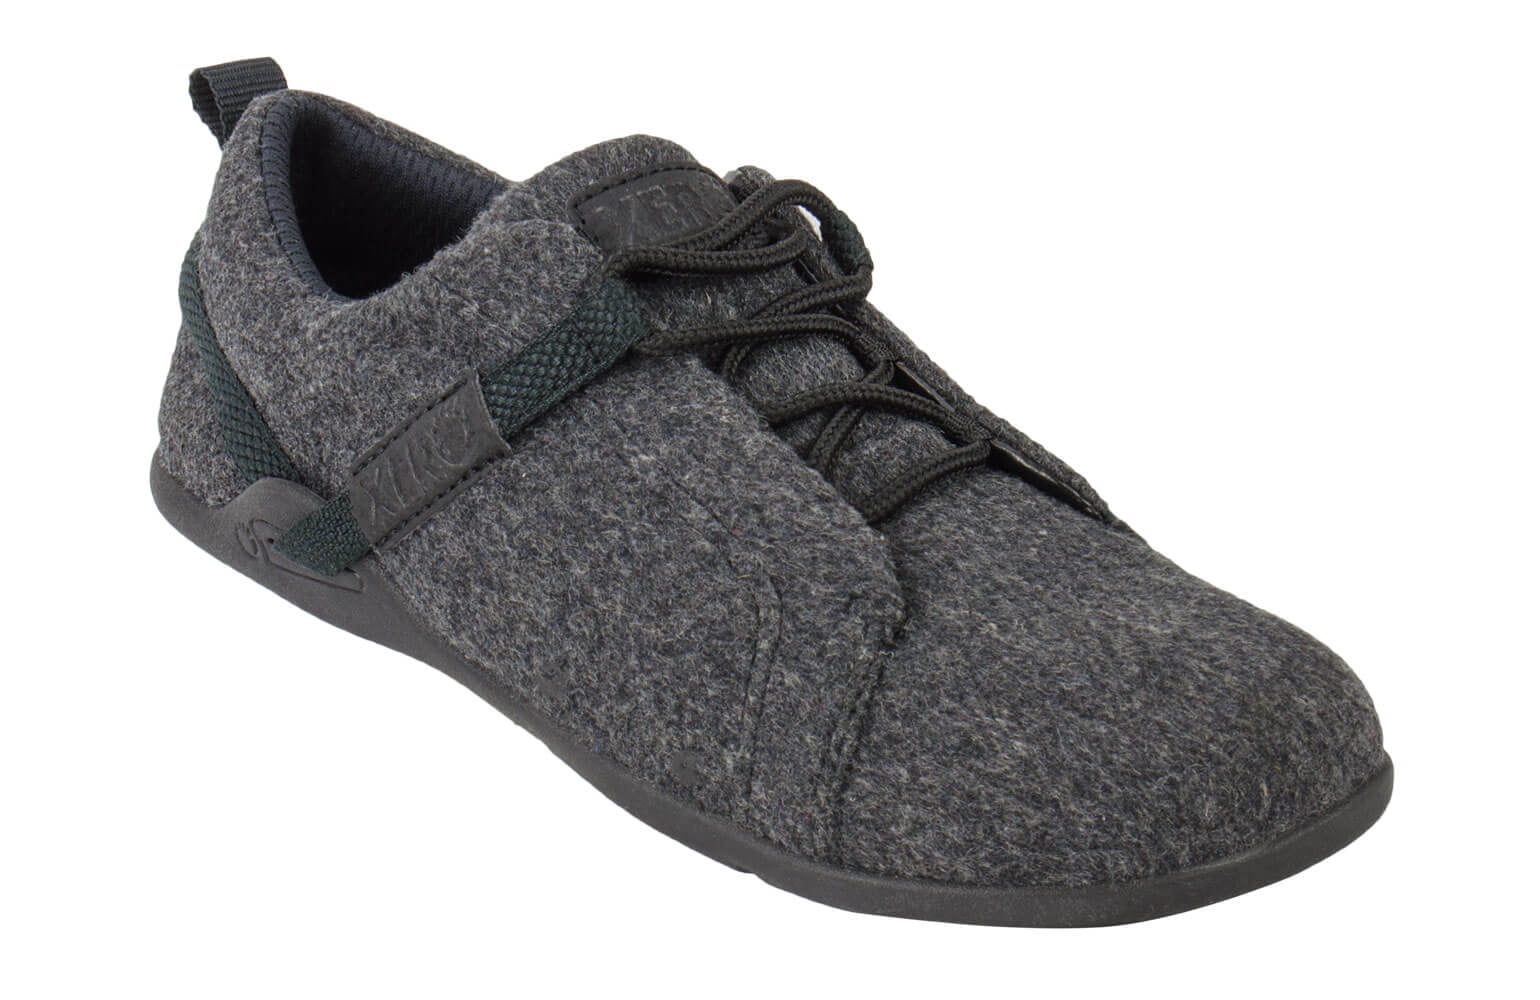 Xero Shoes - Xero Shoes Pacifica - Men's Minimalist Wool Shoe ...